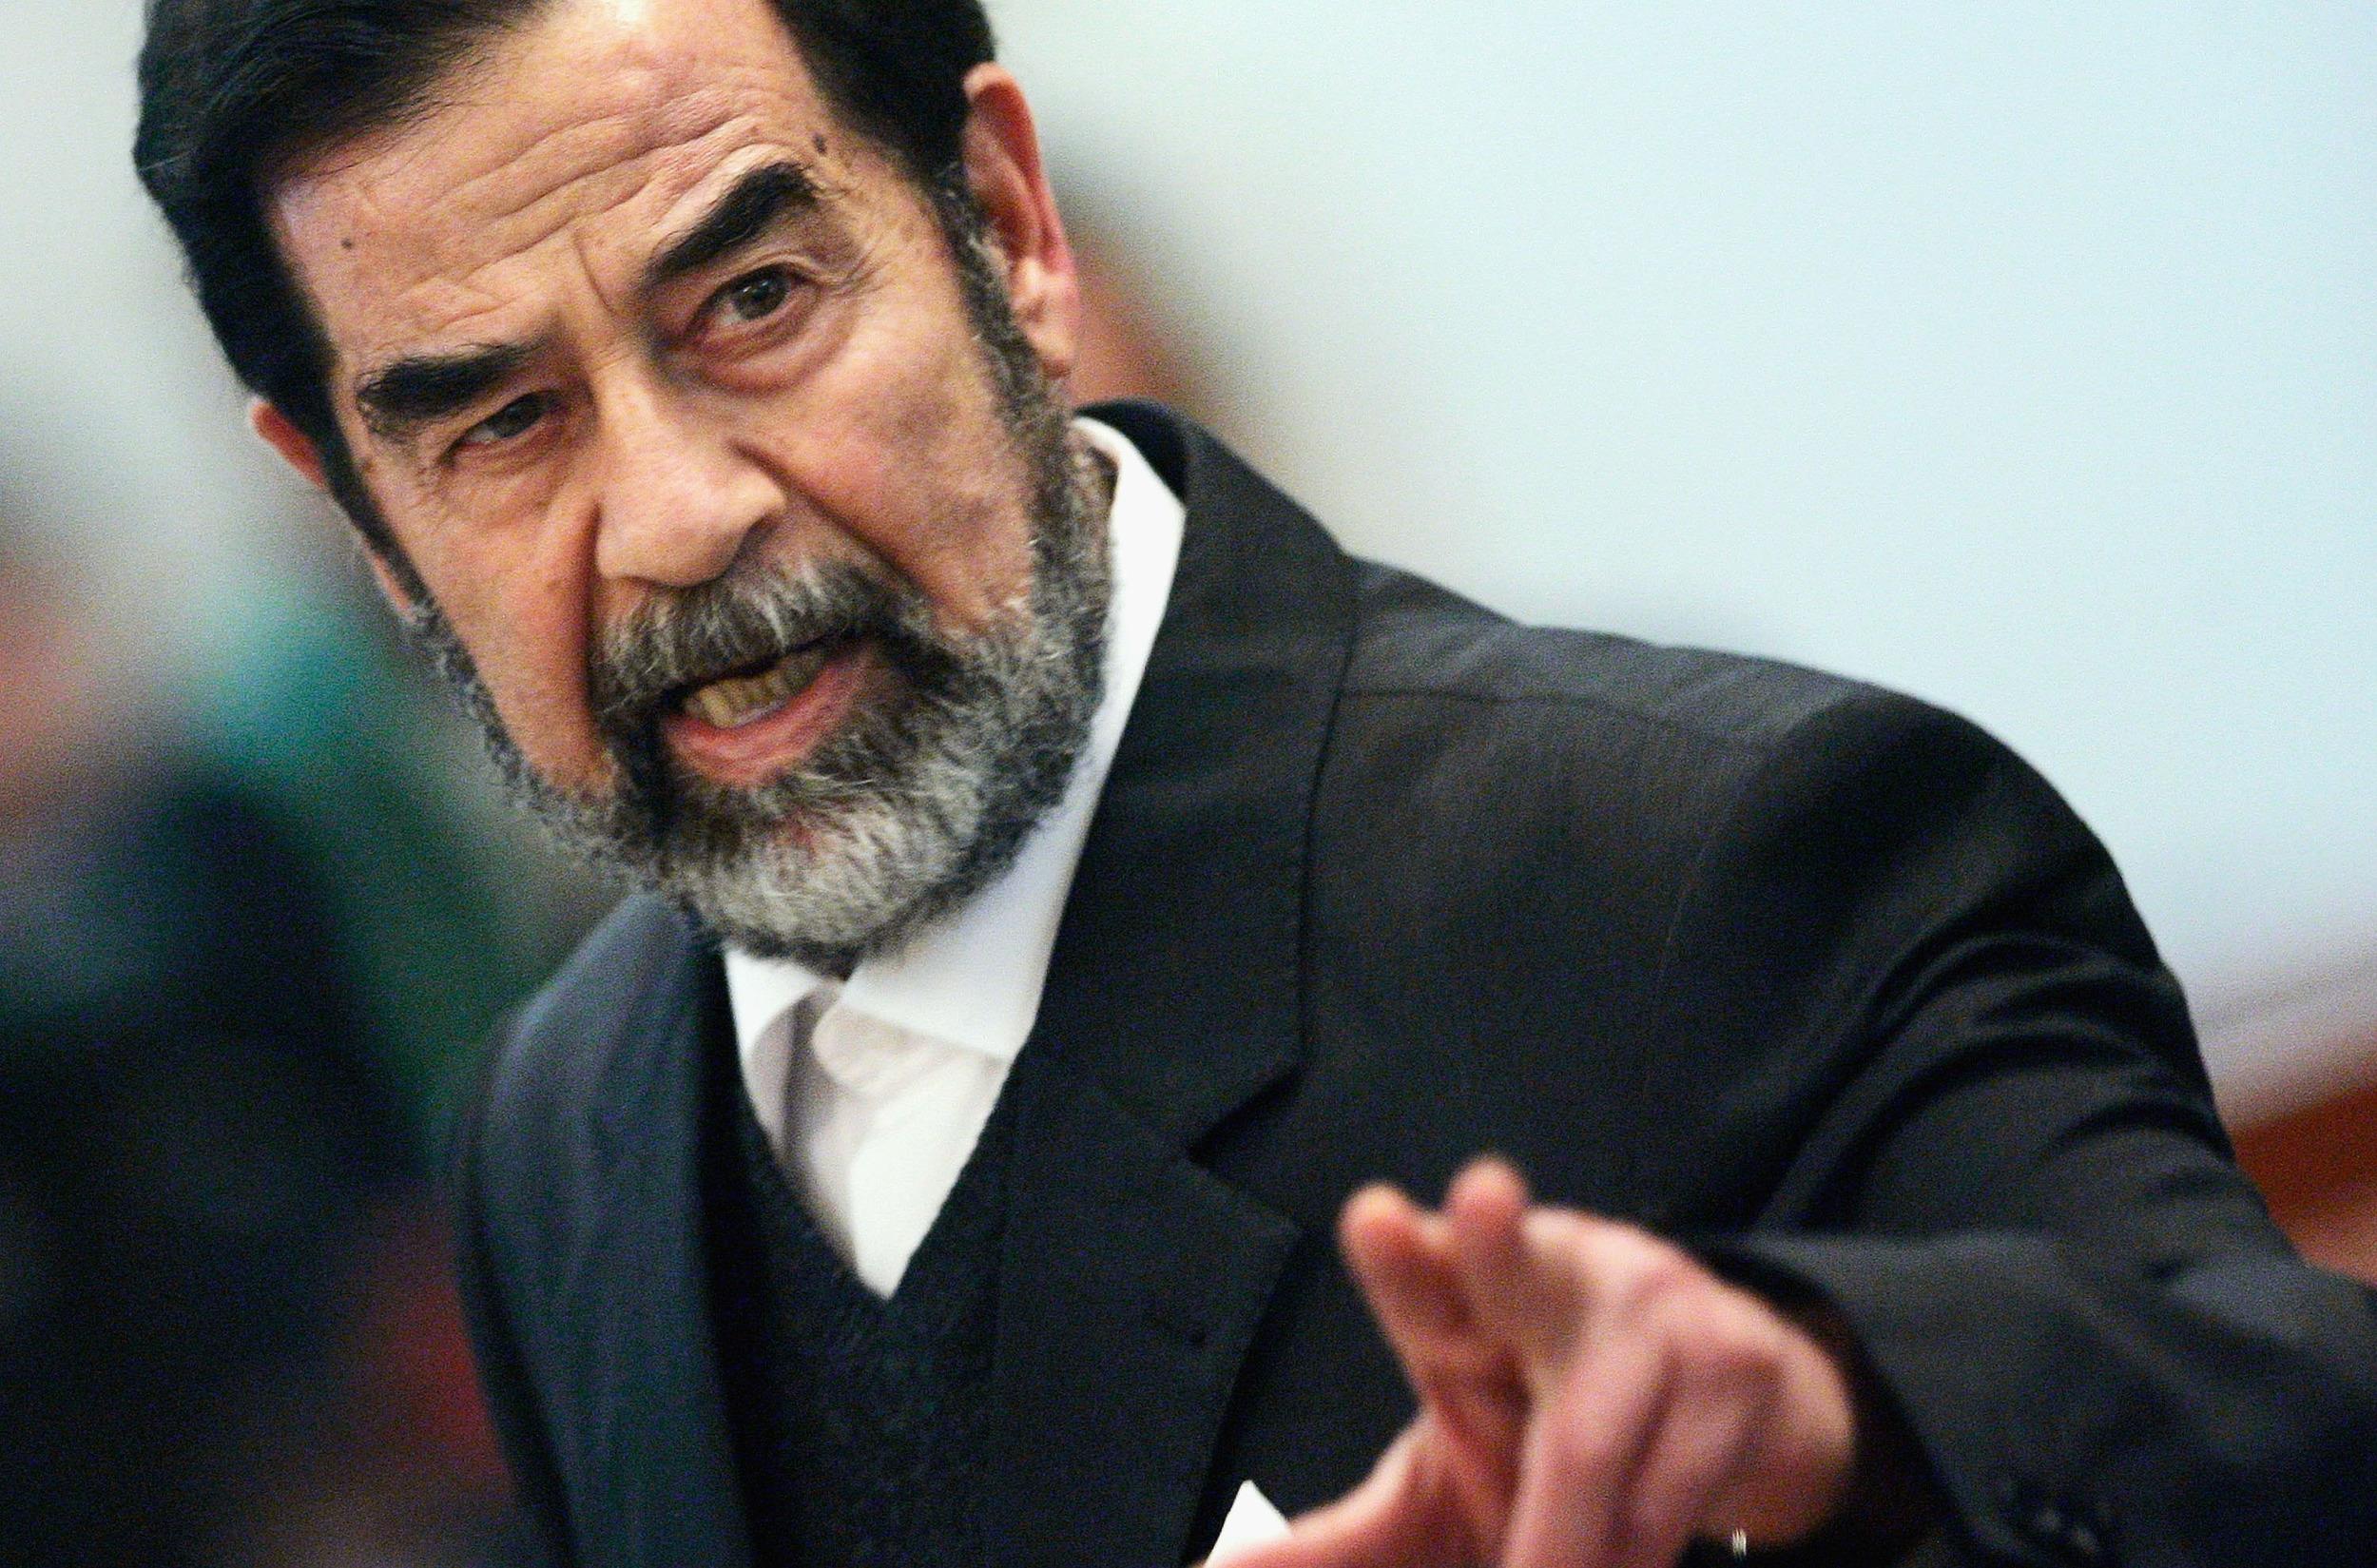 صور خافيات صدام حسين , رئيس الدولة الذى اصبح شهيد وبطل اروع روعه